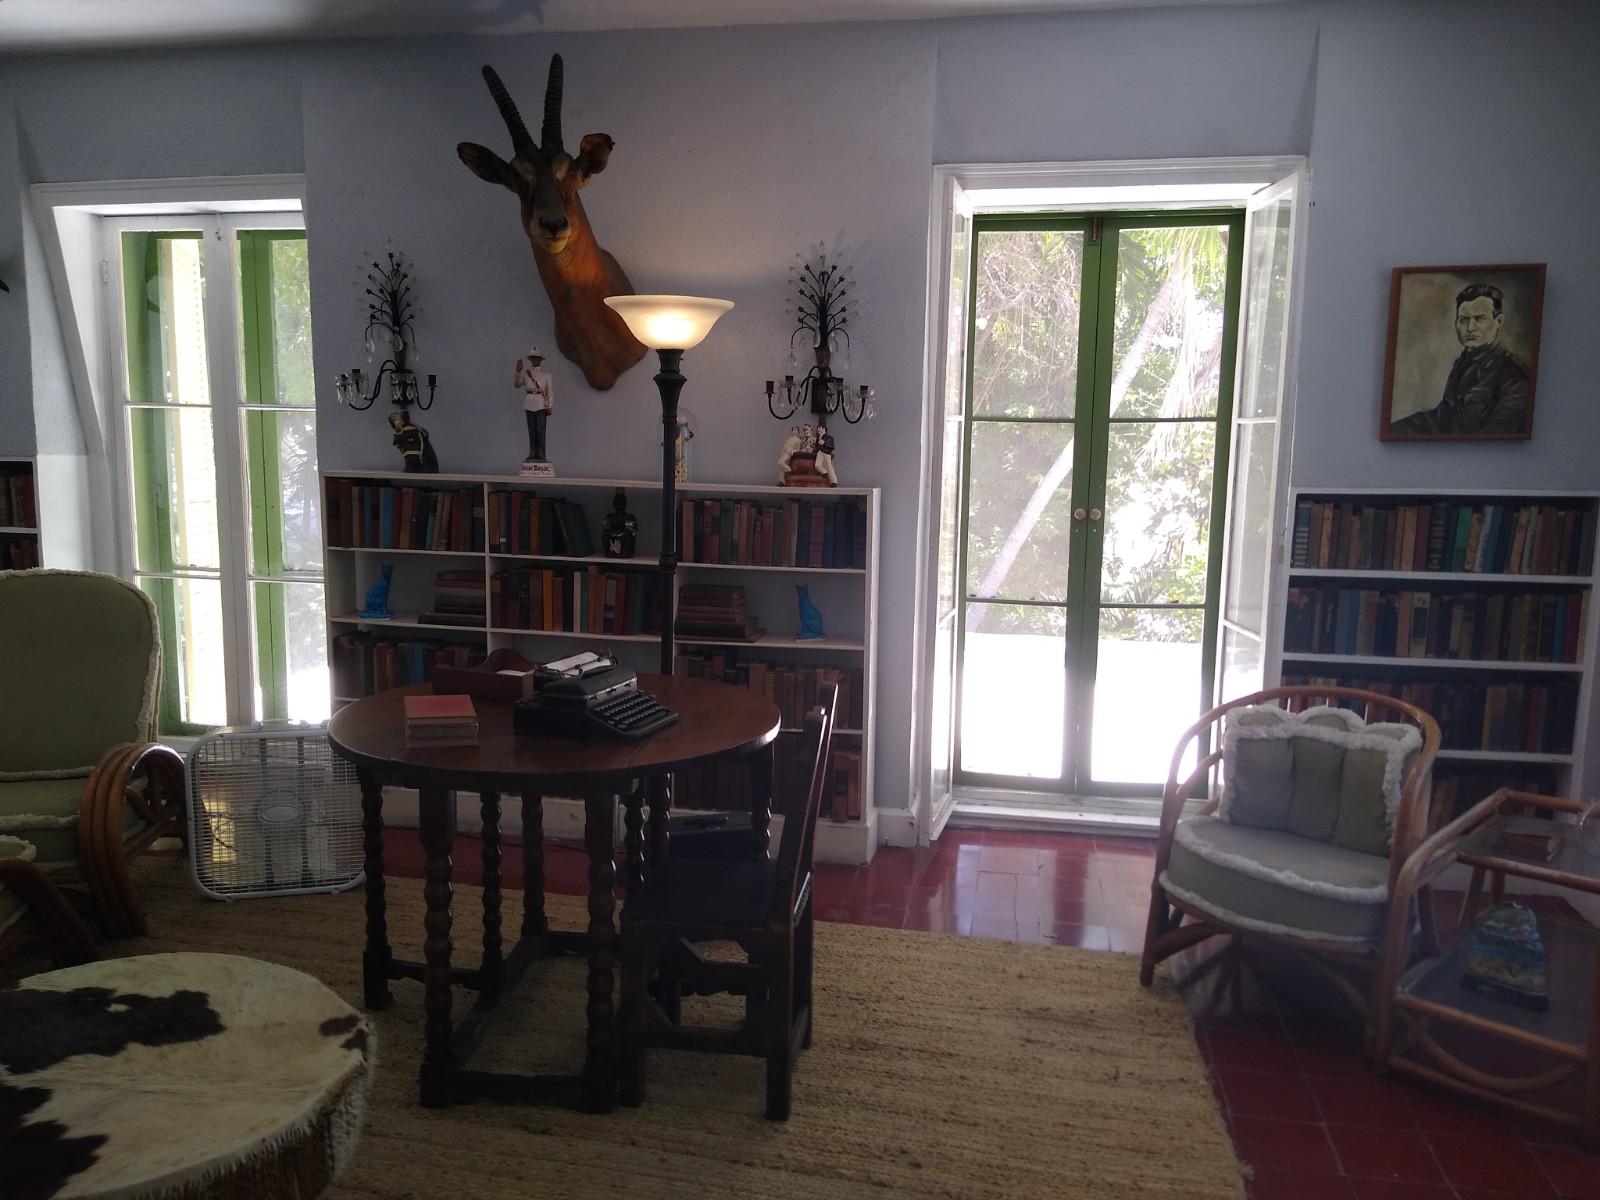 Hemingway's writing office